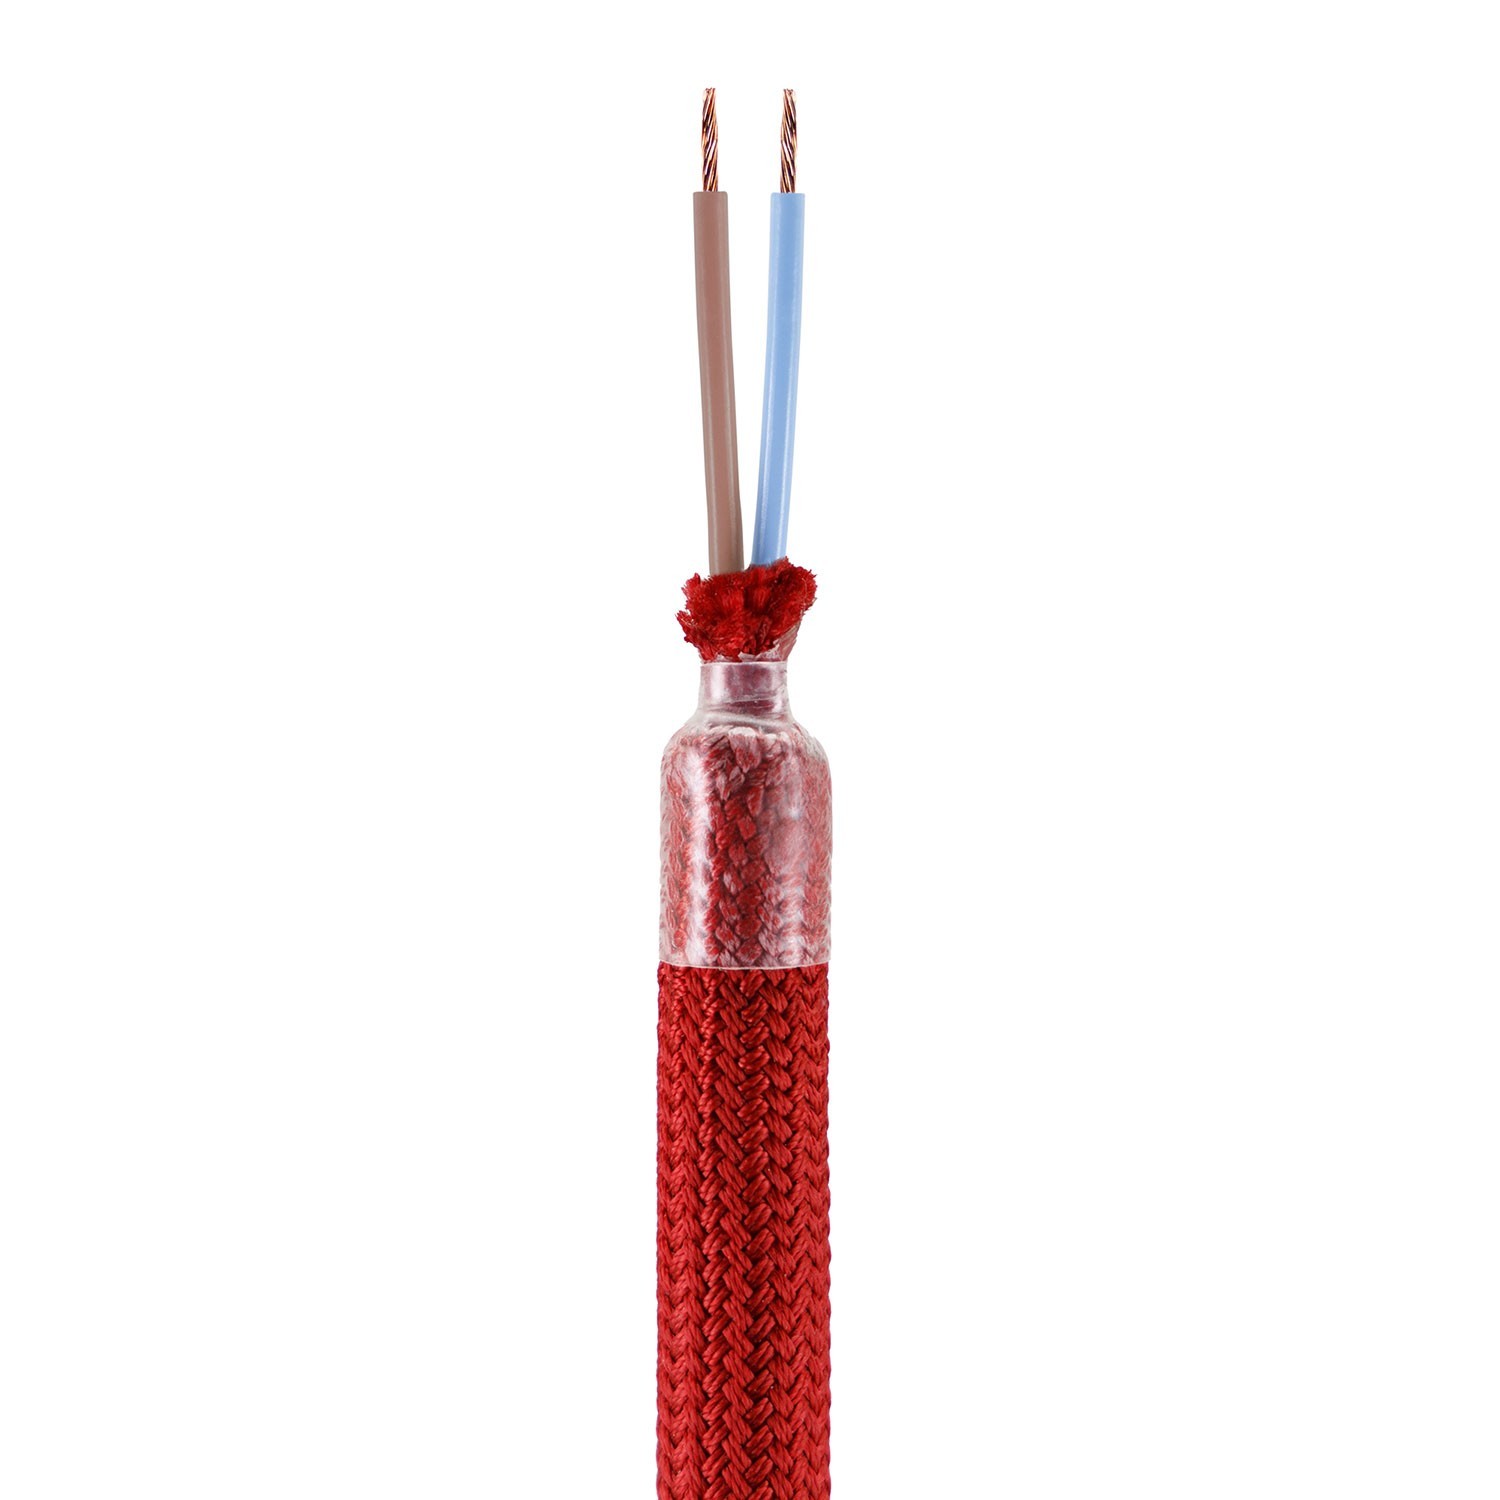 Creative Flex v sade - ohybná trubica potiahnutá červenou textíliou RM09 s kovovými koncovými svorkami